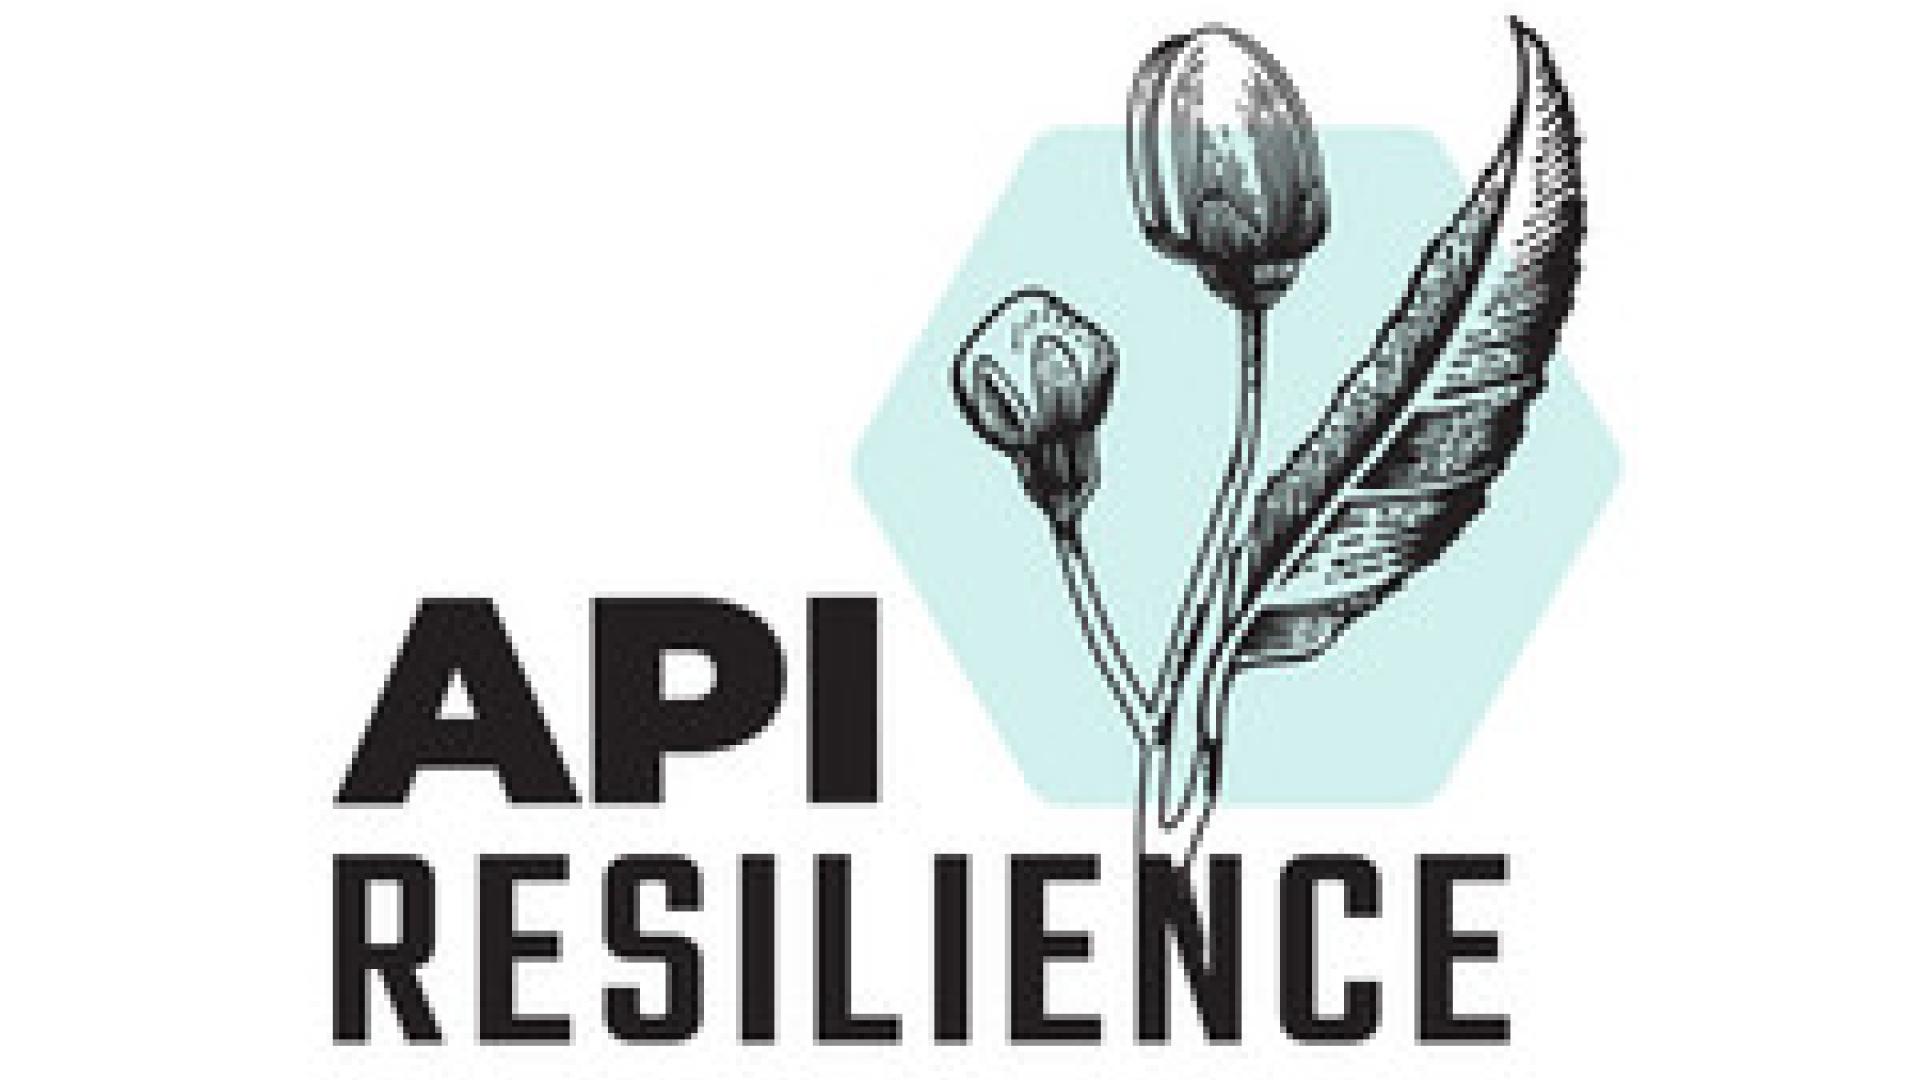 API Resilience